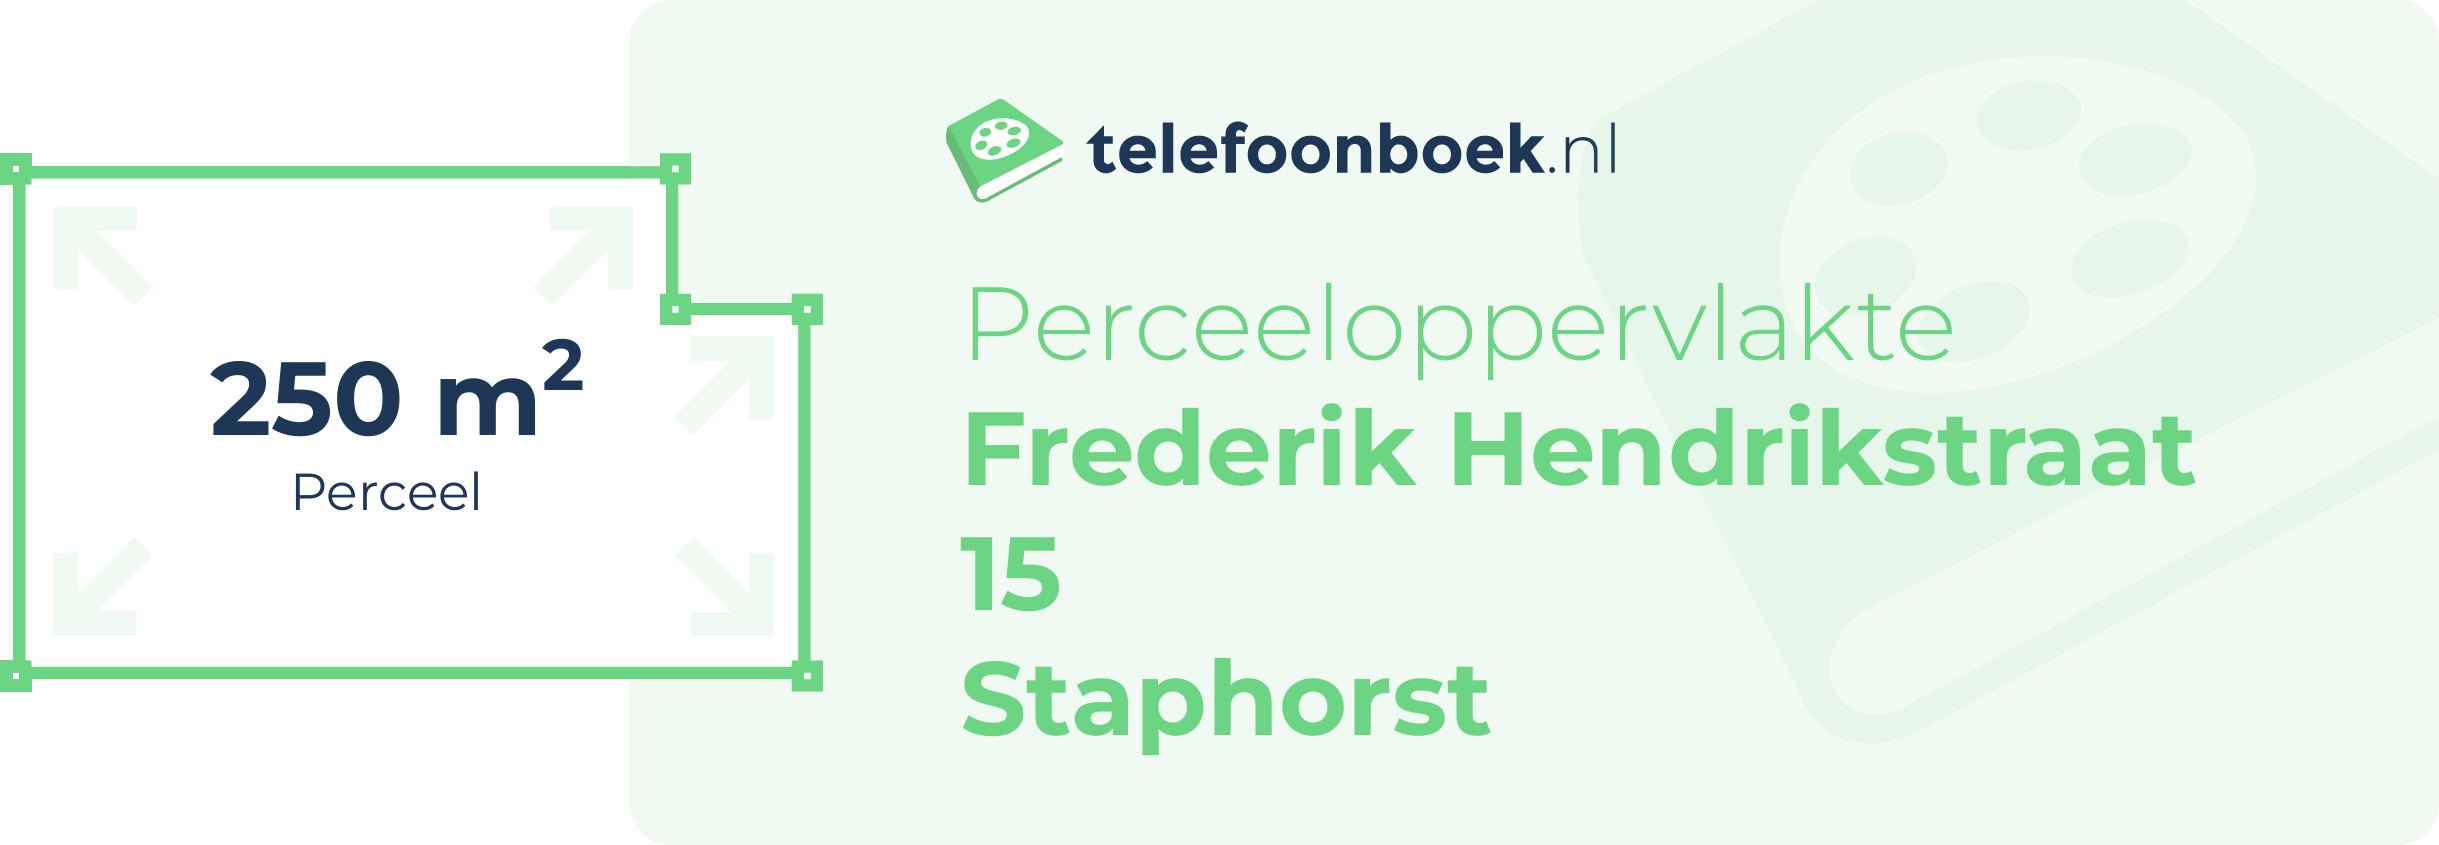 Perceeloppervlakte Frederik Hendrikstraat 15 Staphorst